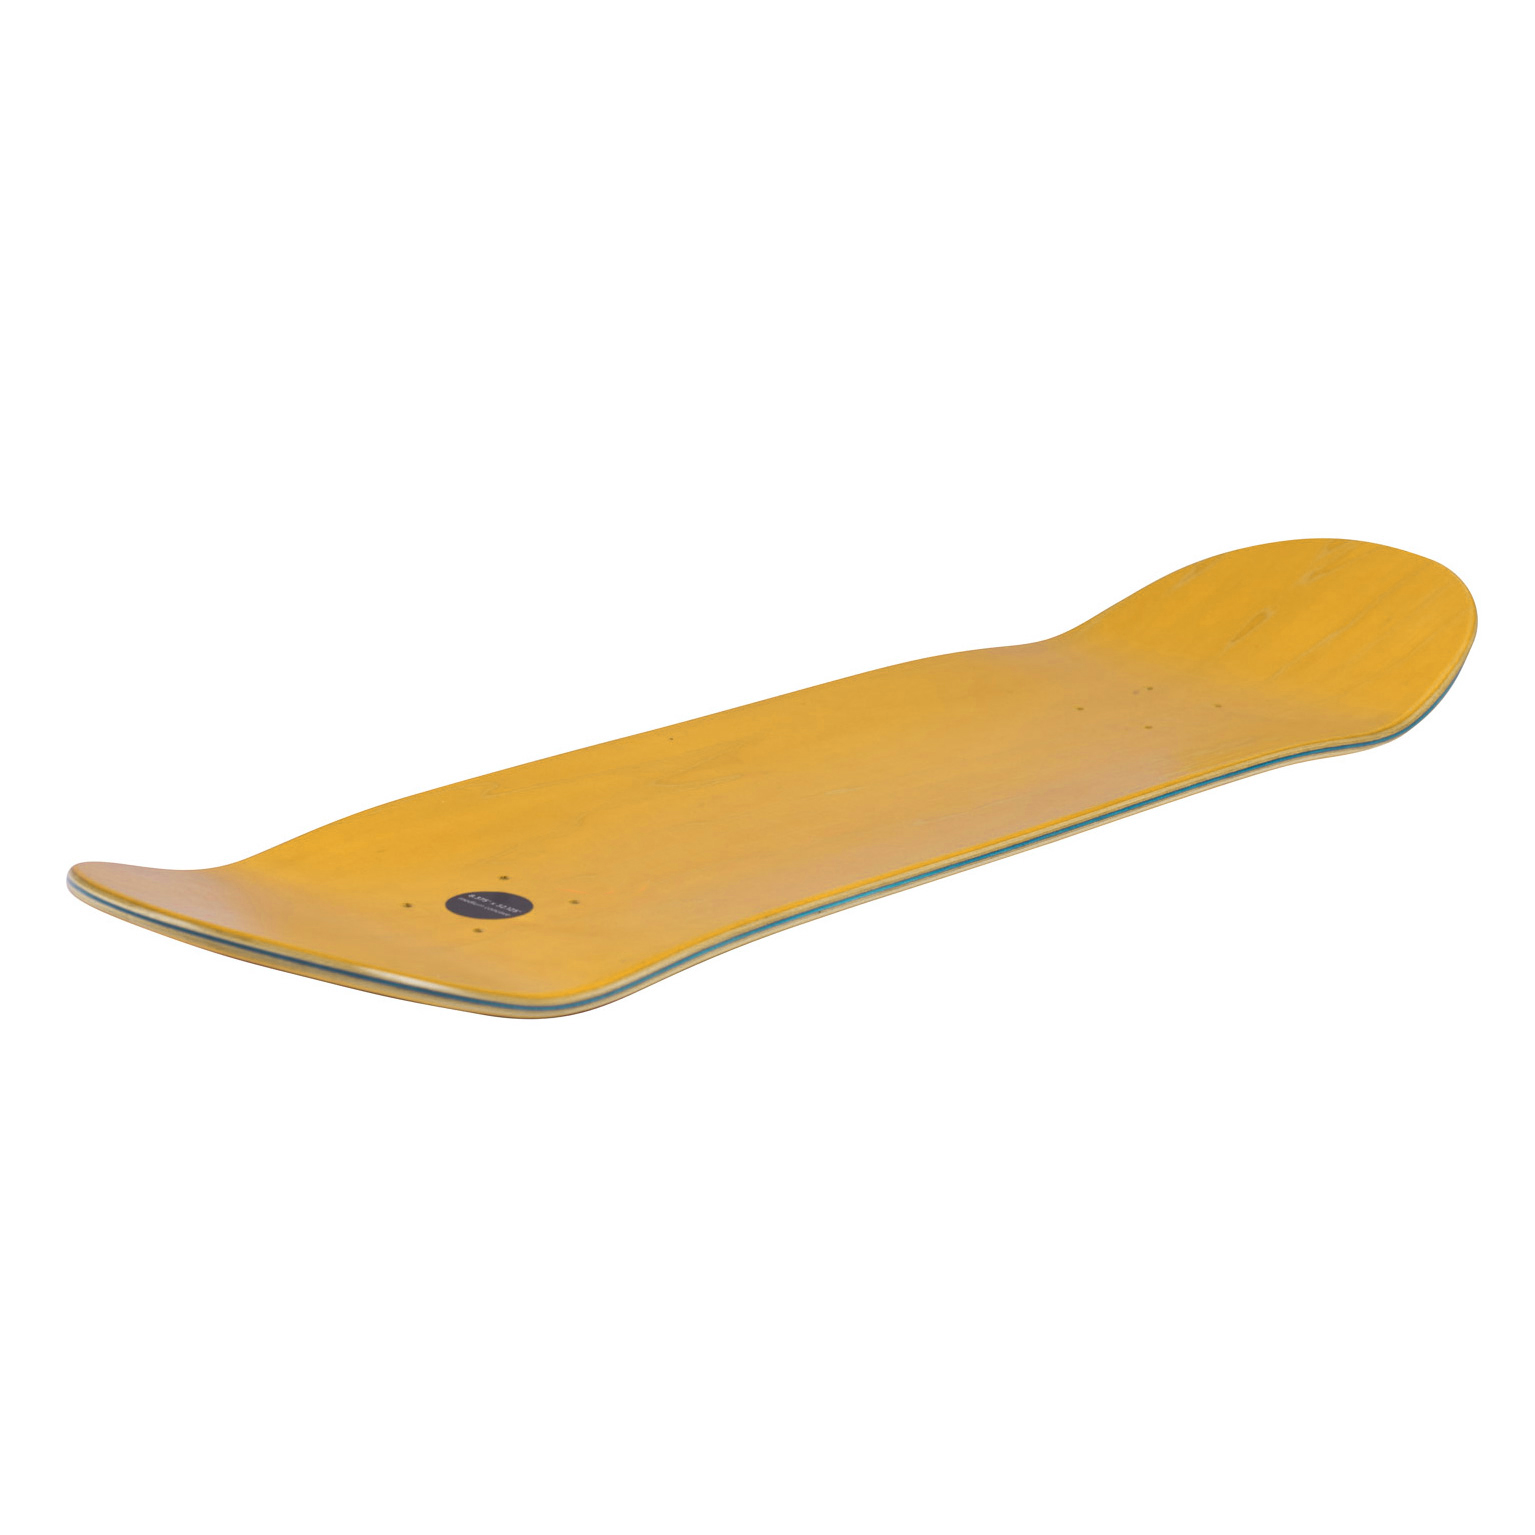 Trap Skateboard Deck Monochrome Series 7.75" (yellow)